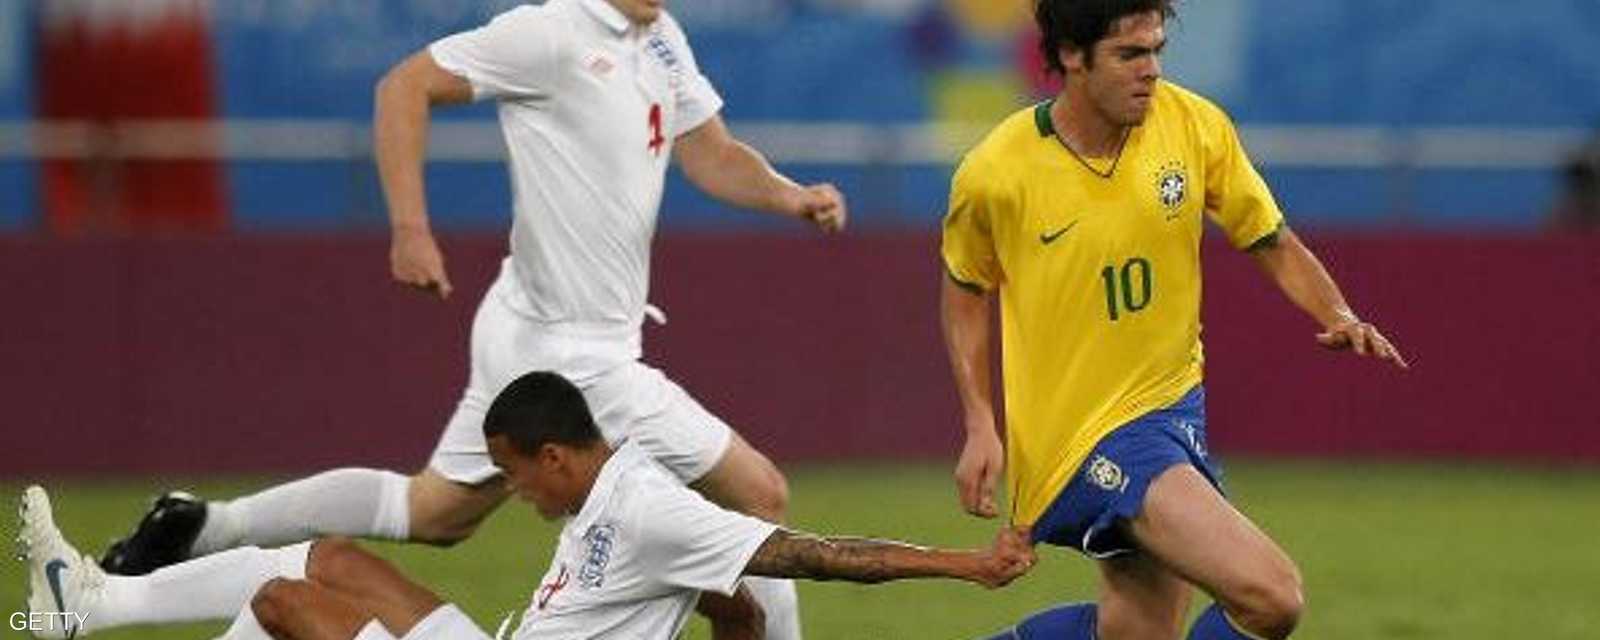 اللاعب البرازيلي عرف بمهارته في شن الهجمات على أرض الملعب